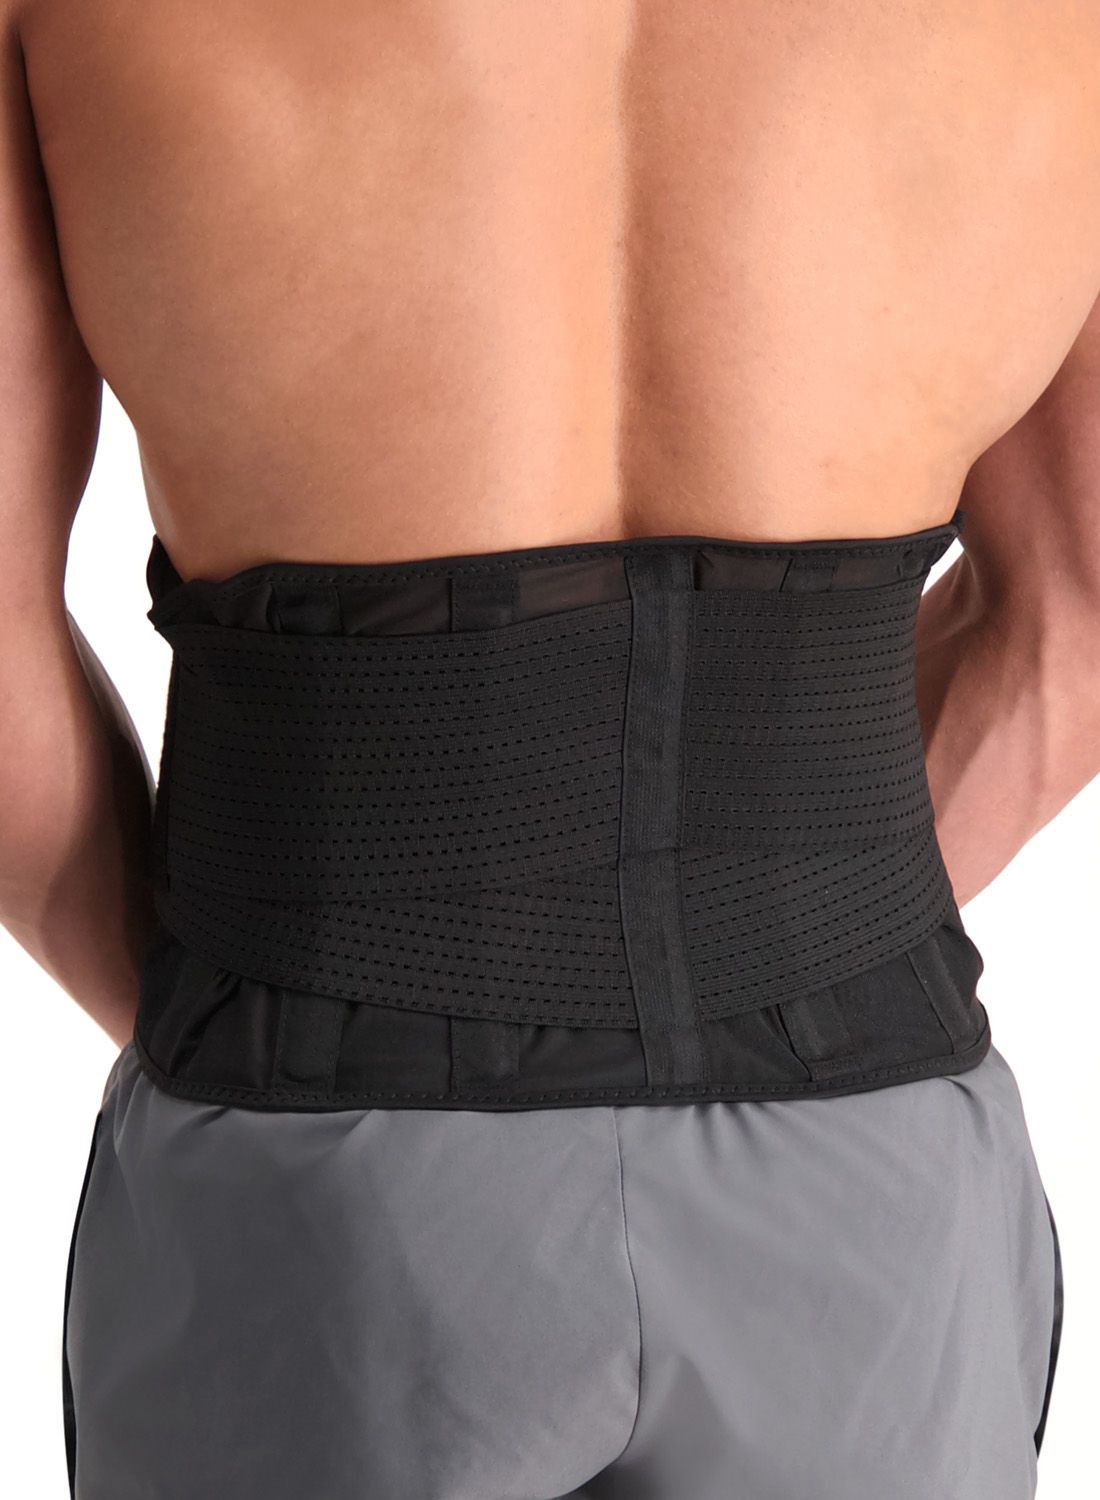 McDavid Waist Trimmer Belt for Men, Sweat Band & Back Support, Improved  Posture for Workouts, Black